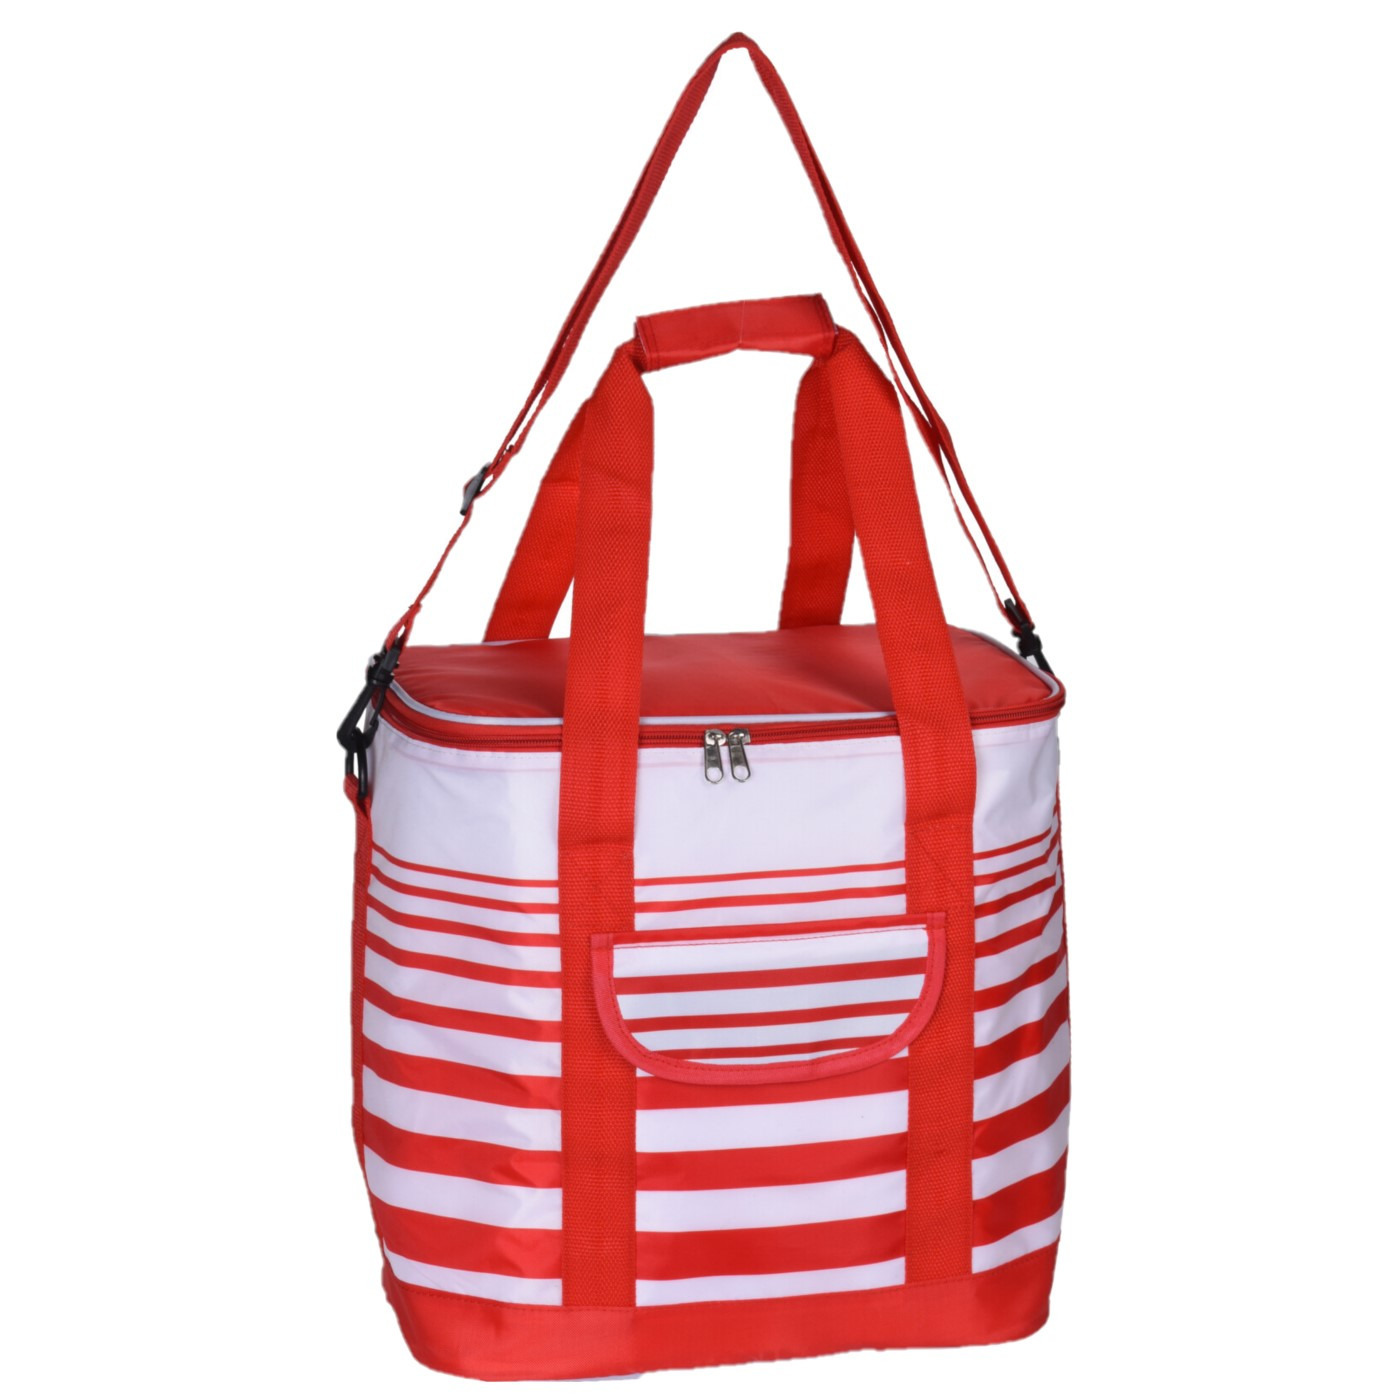 Grote koeltas draagtas schoudertas rood-wit gestreept 33 x 23 x 36 cm 24 liter